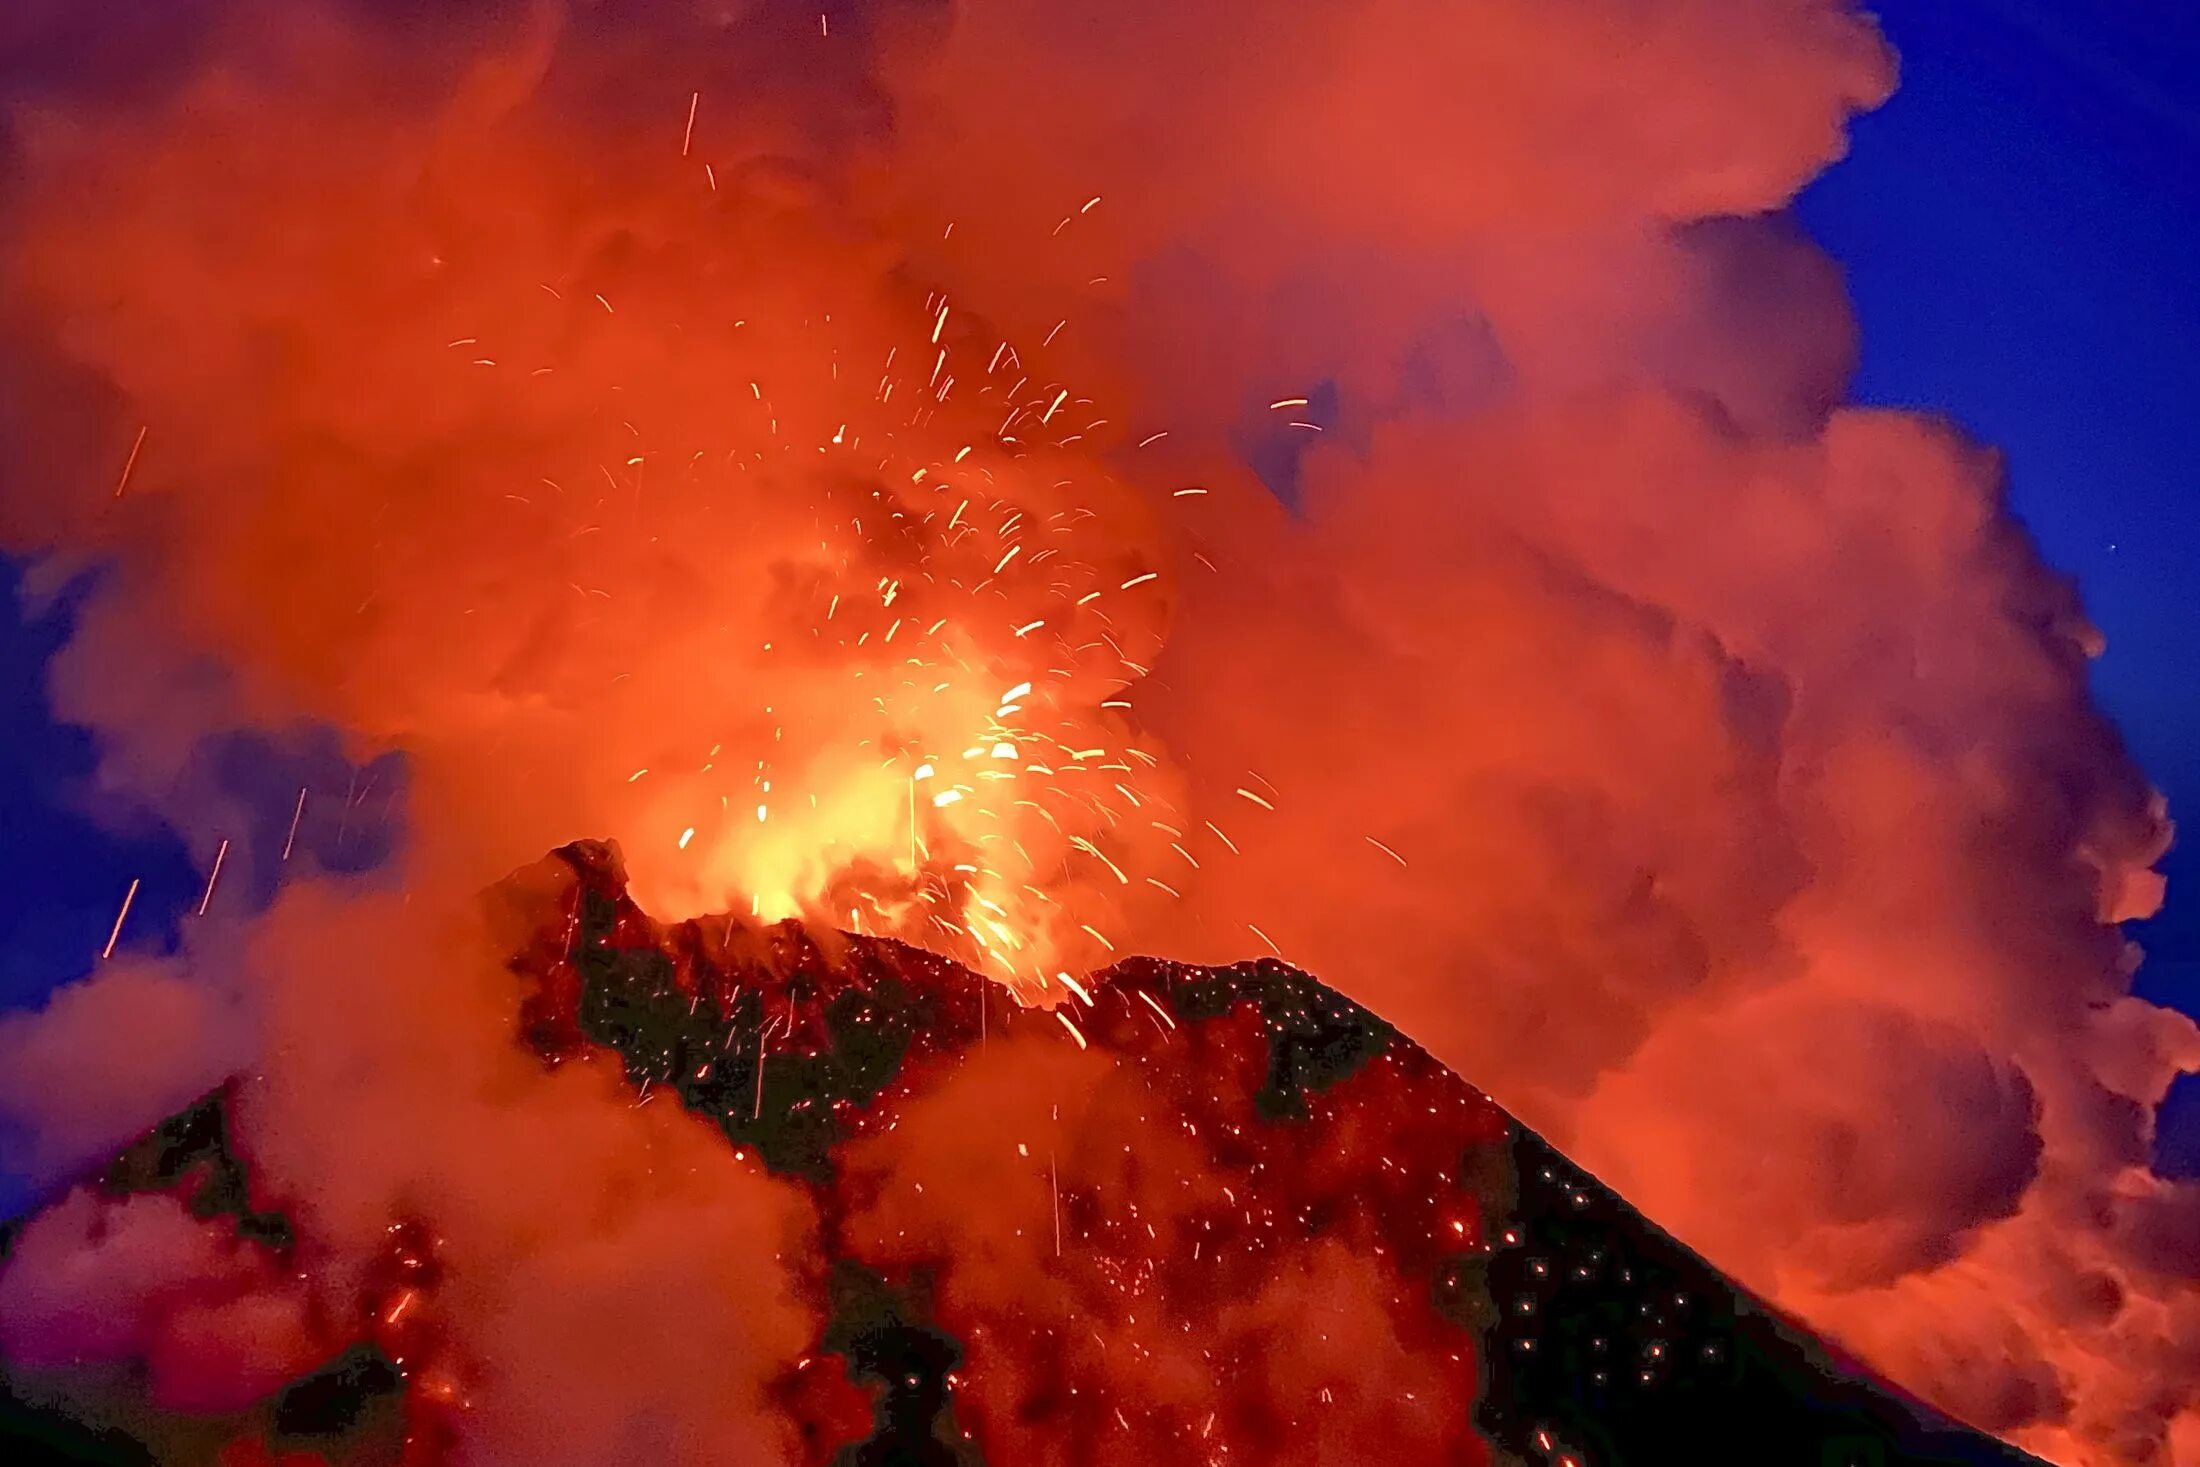 Звук взрыва вблизи. Извержение вулкана Ключевская сопка. Извержение вулкана Ключевская сопка 2021. Камчатка вулкан Ключевская сопка извержение. Последнее извержение вулкана Ключевская сопка.